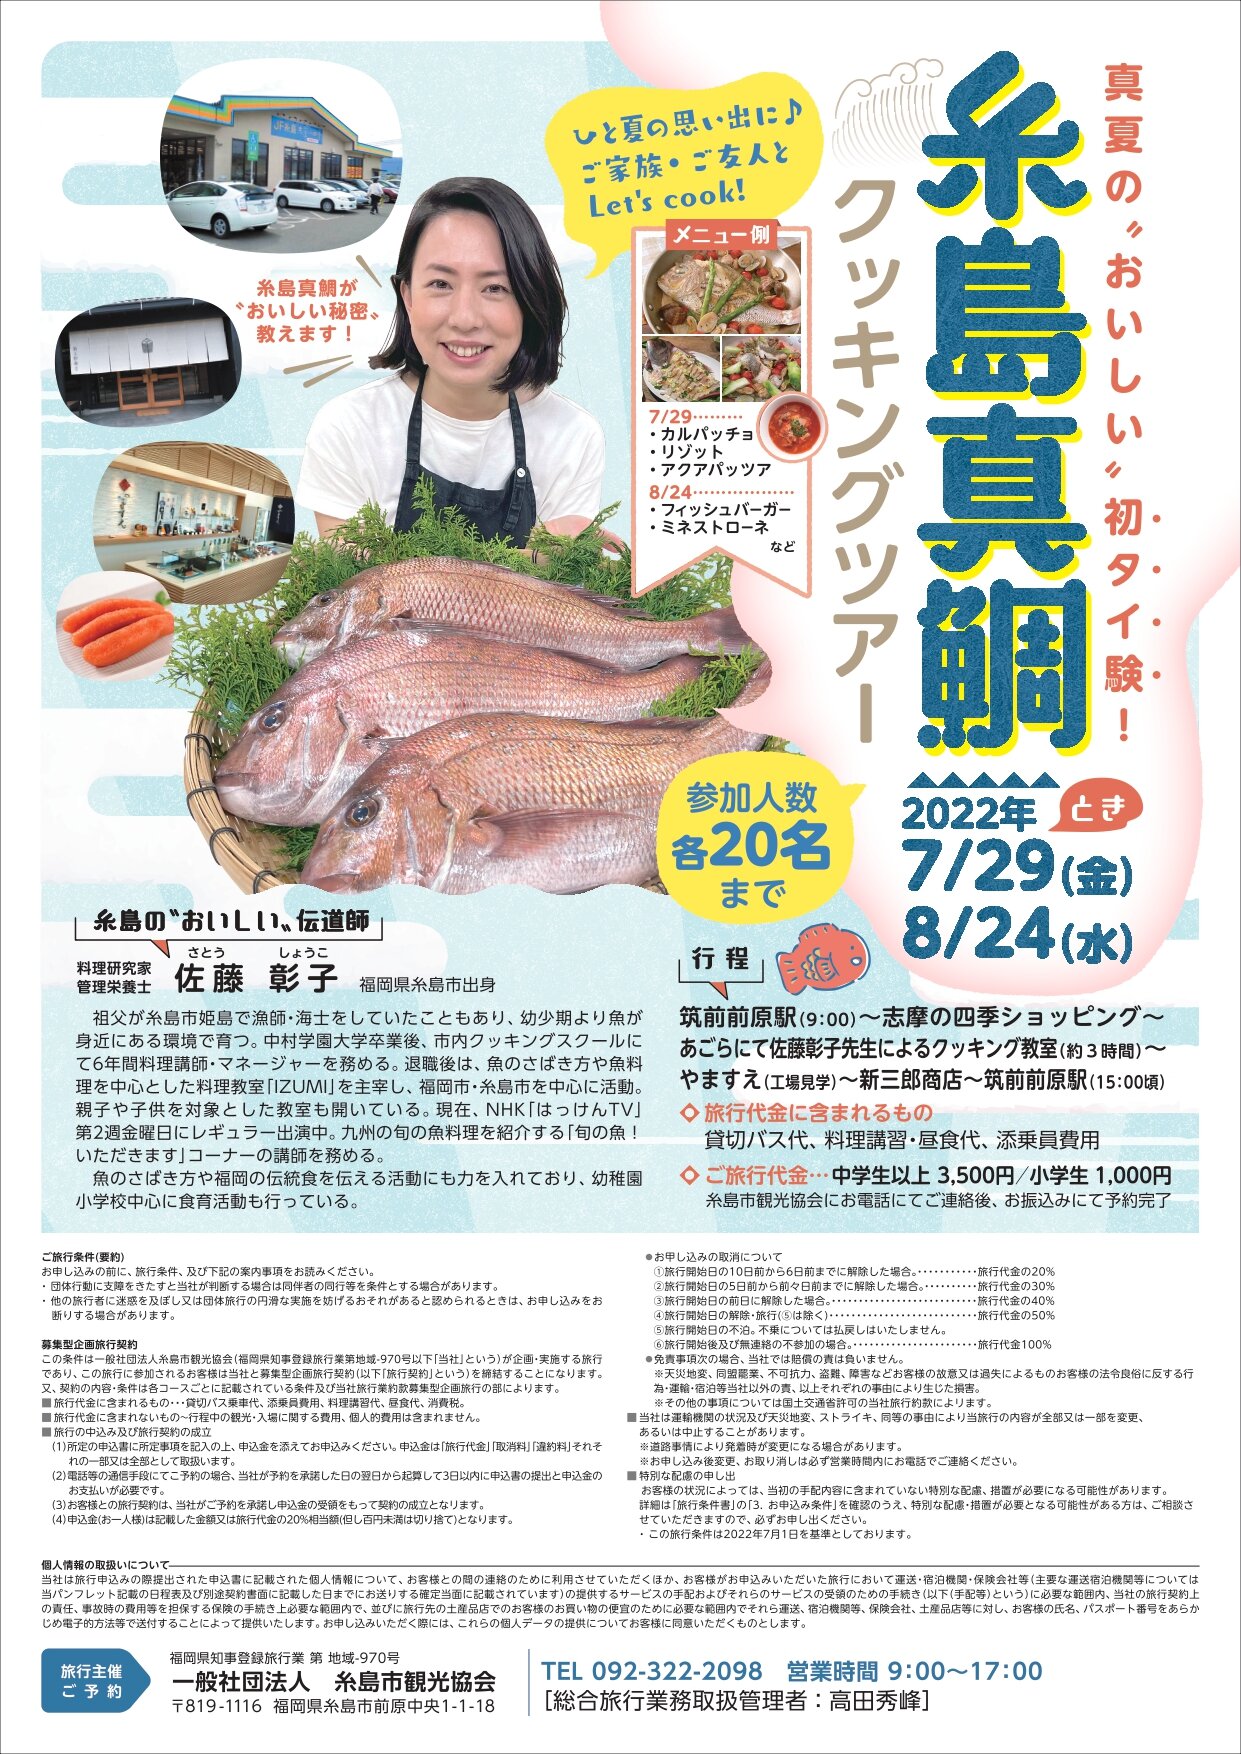 糸島真鯛クッキングツアー開催！（7/29と8/24の2回）に関する画像